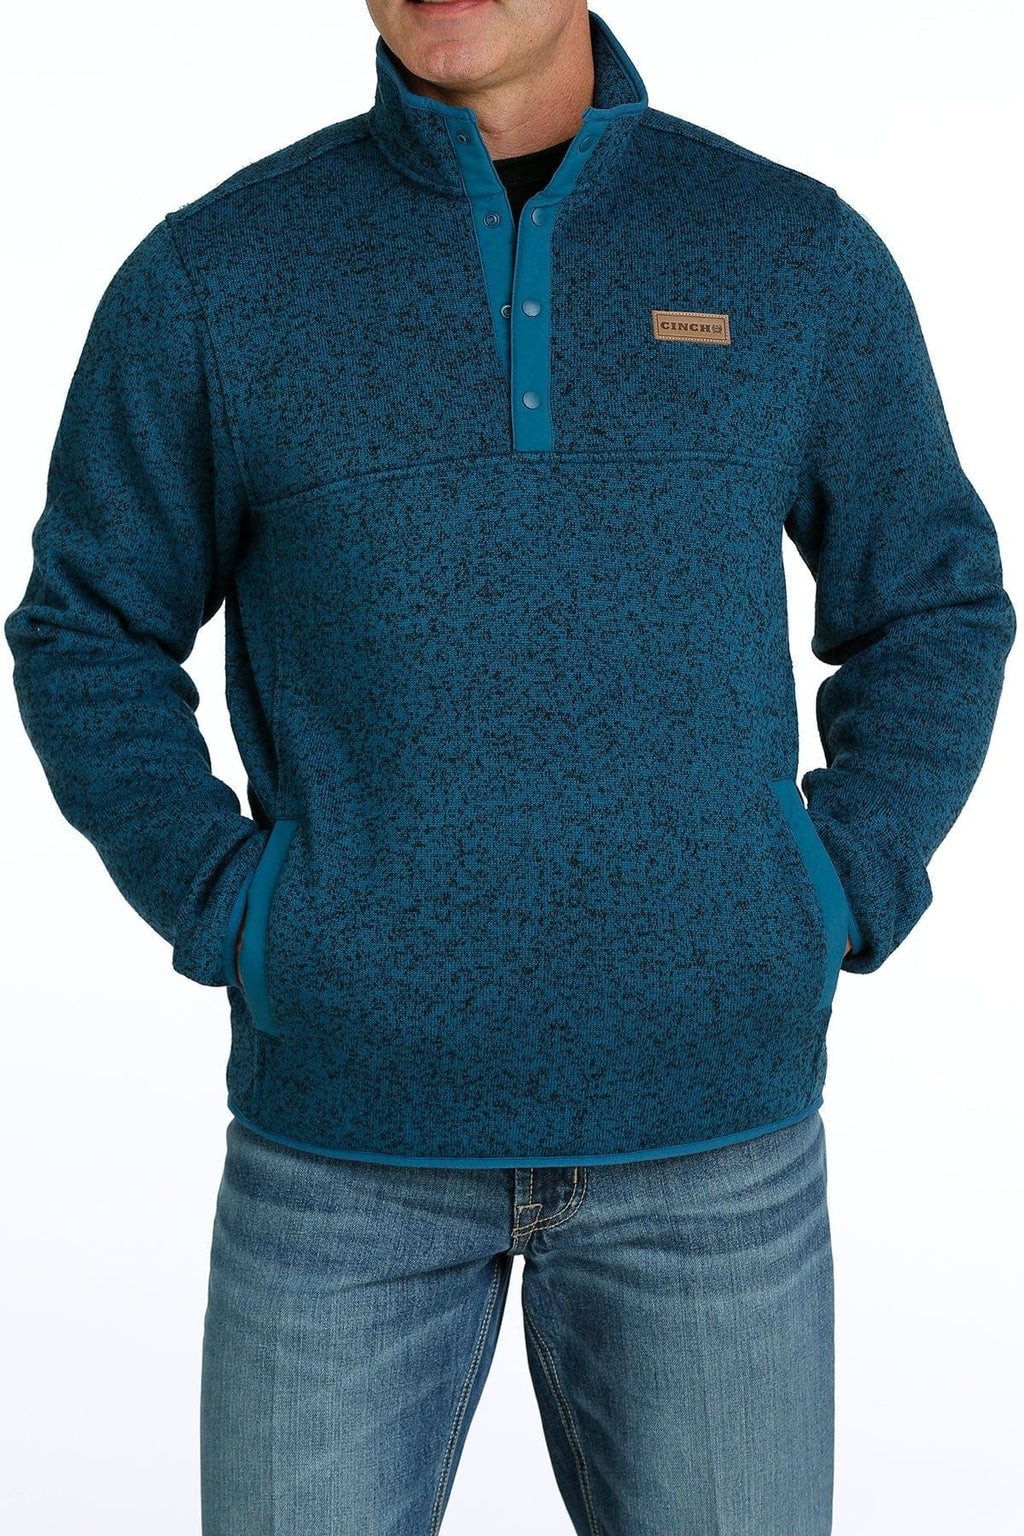 Cinch Jeans  Men's 1/4 Zip Pullover Sweater - Navy